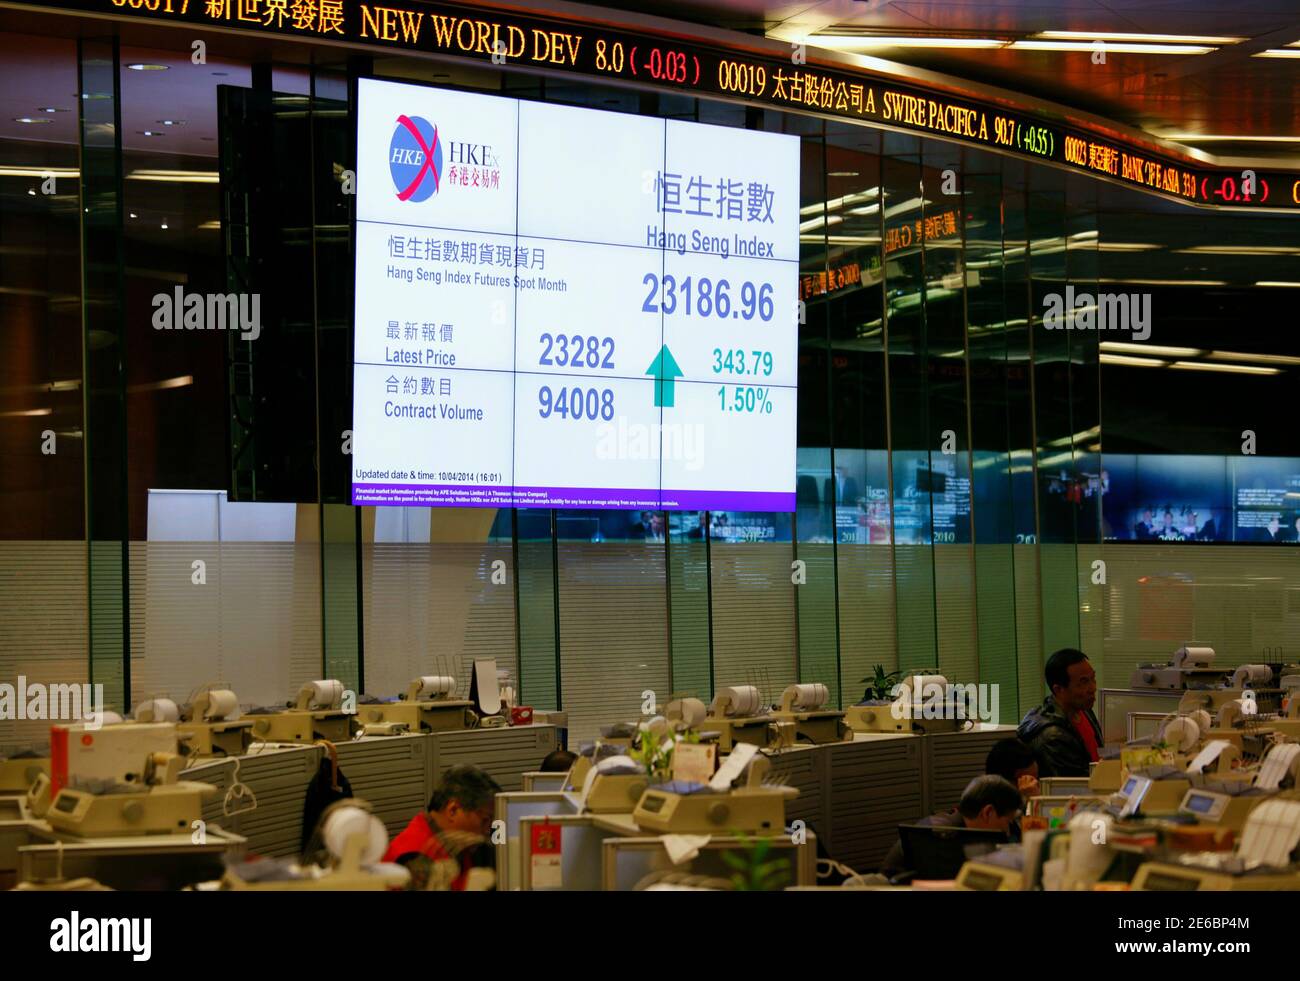 L'indice di chiusura del chip blu Hang Seng è esposto all'interno della  sala di negoziazione della Borsa di Hong Kong il 10 aprile 2014. L'autorità  di regolamentazione dei valori mobiliari della Cina